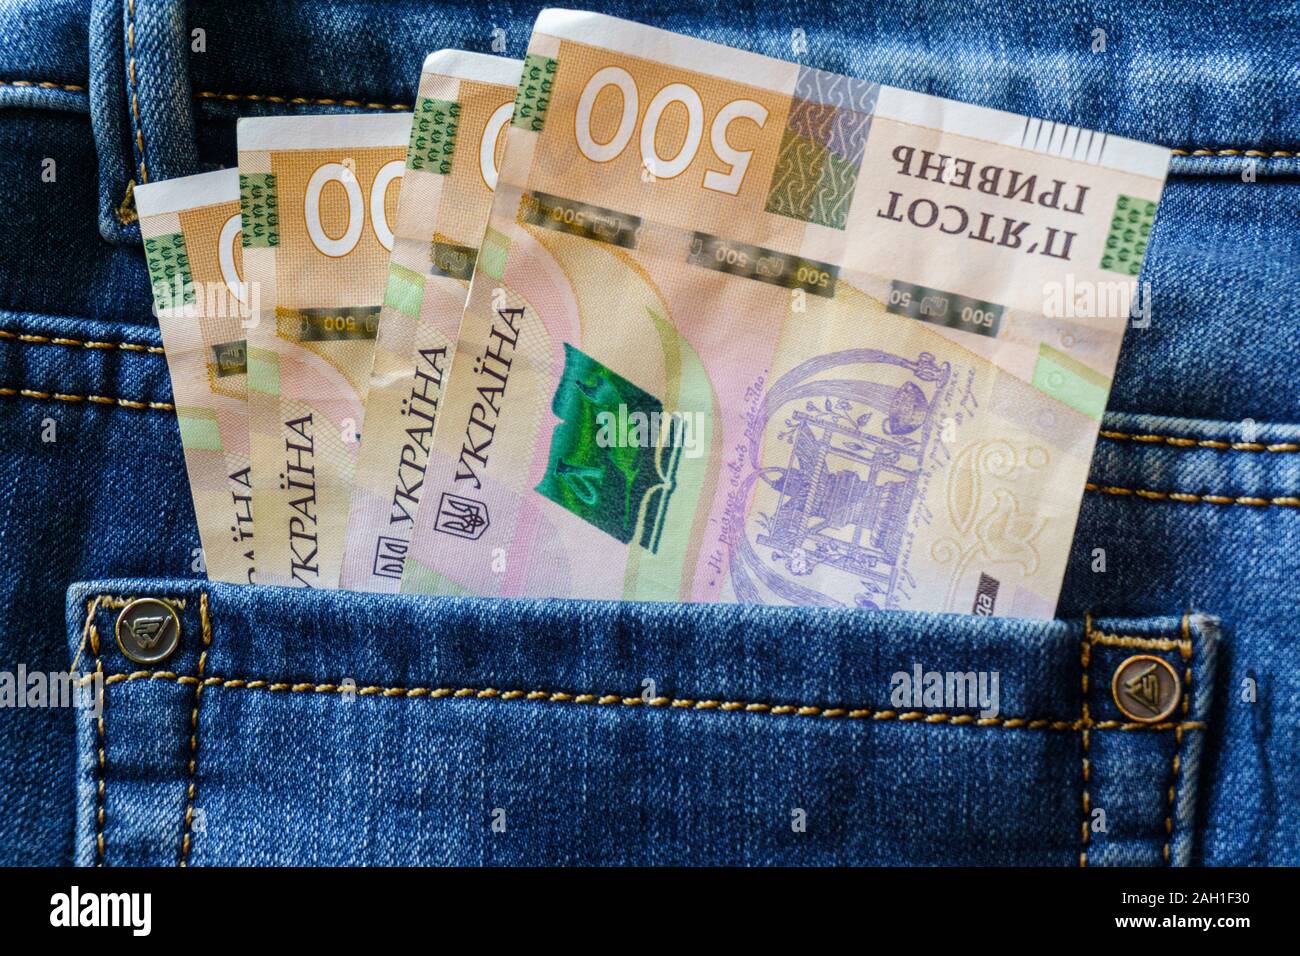 L'argent de l'Ukraine. Nouveaux billets de cinq cents projets de hryvnia UAH dans la poche arrière des jeans. Concept de l'argent, la corruption Banque D'Images